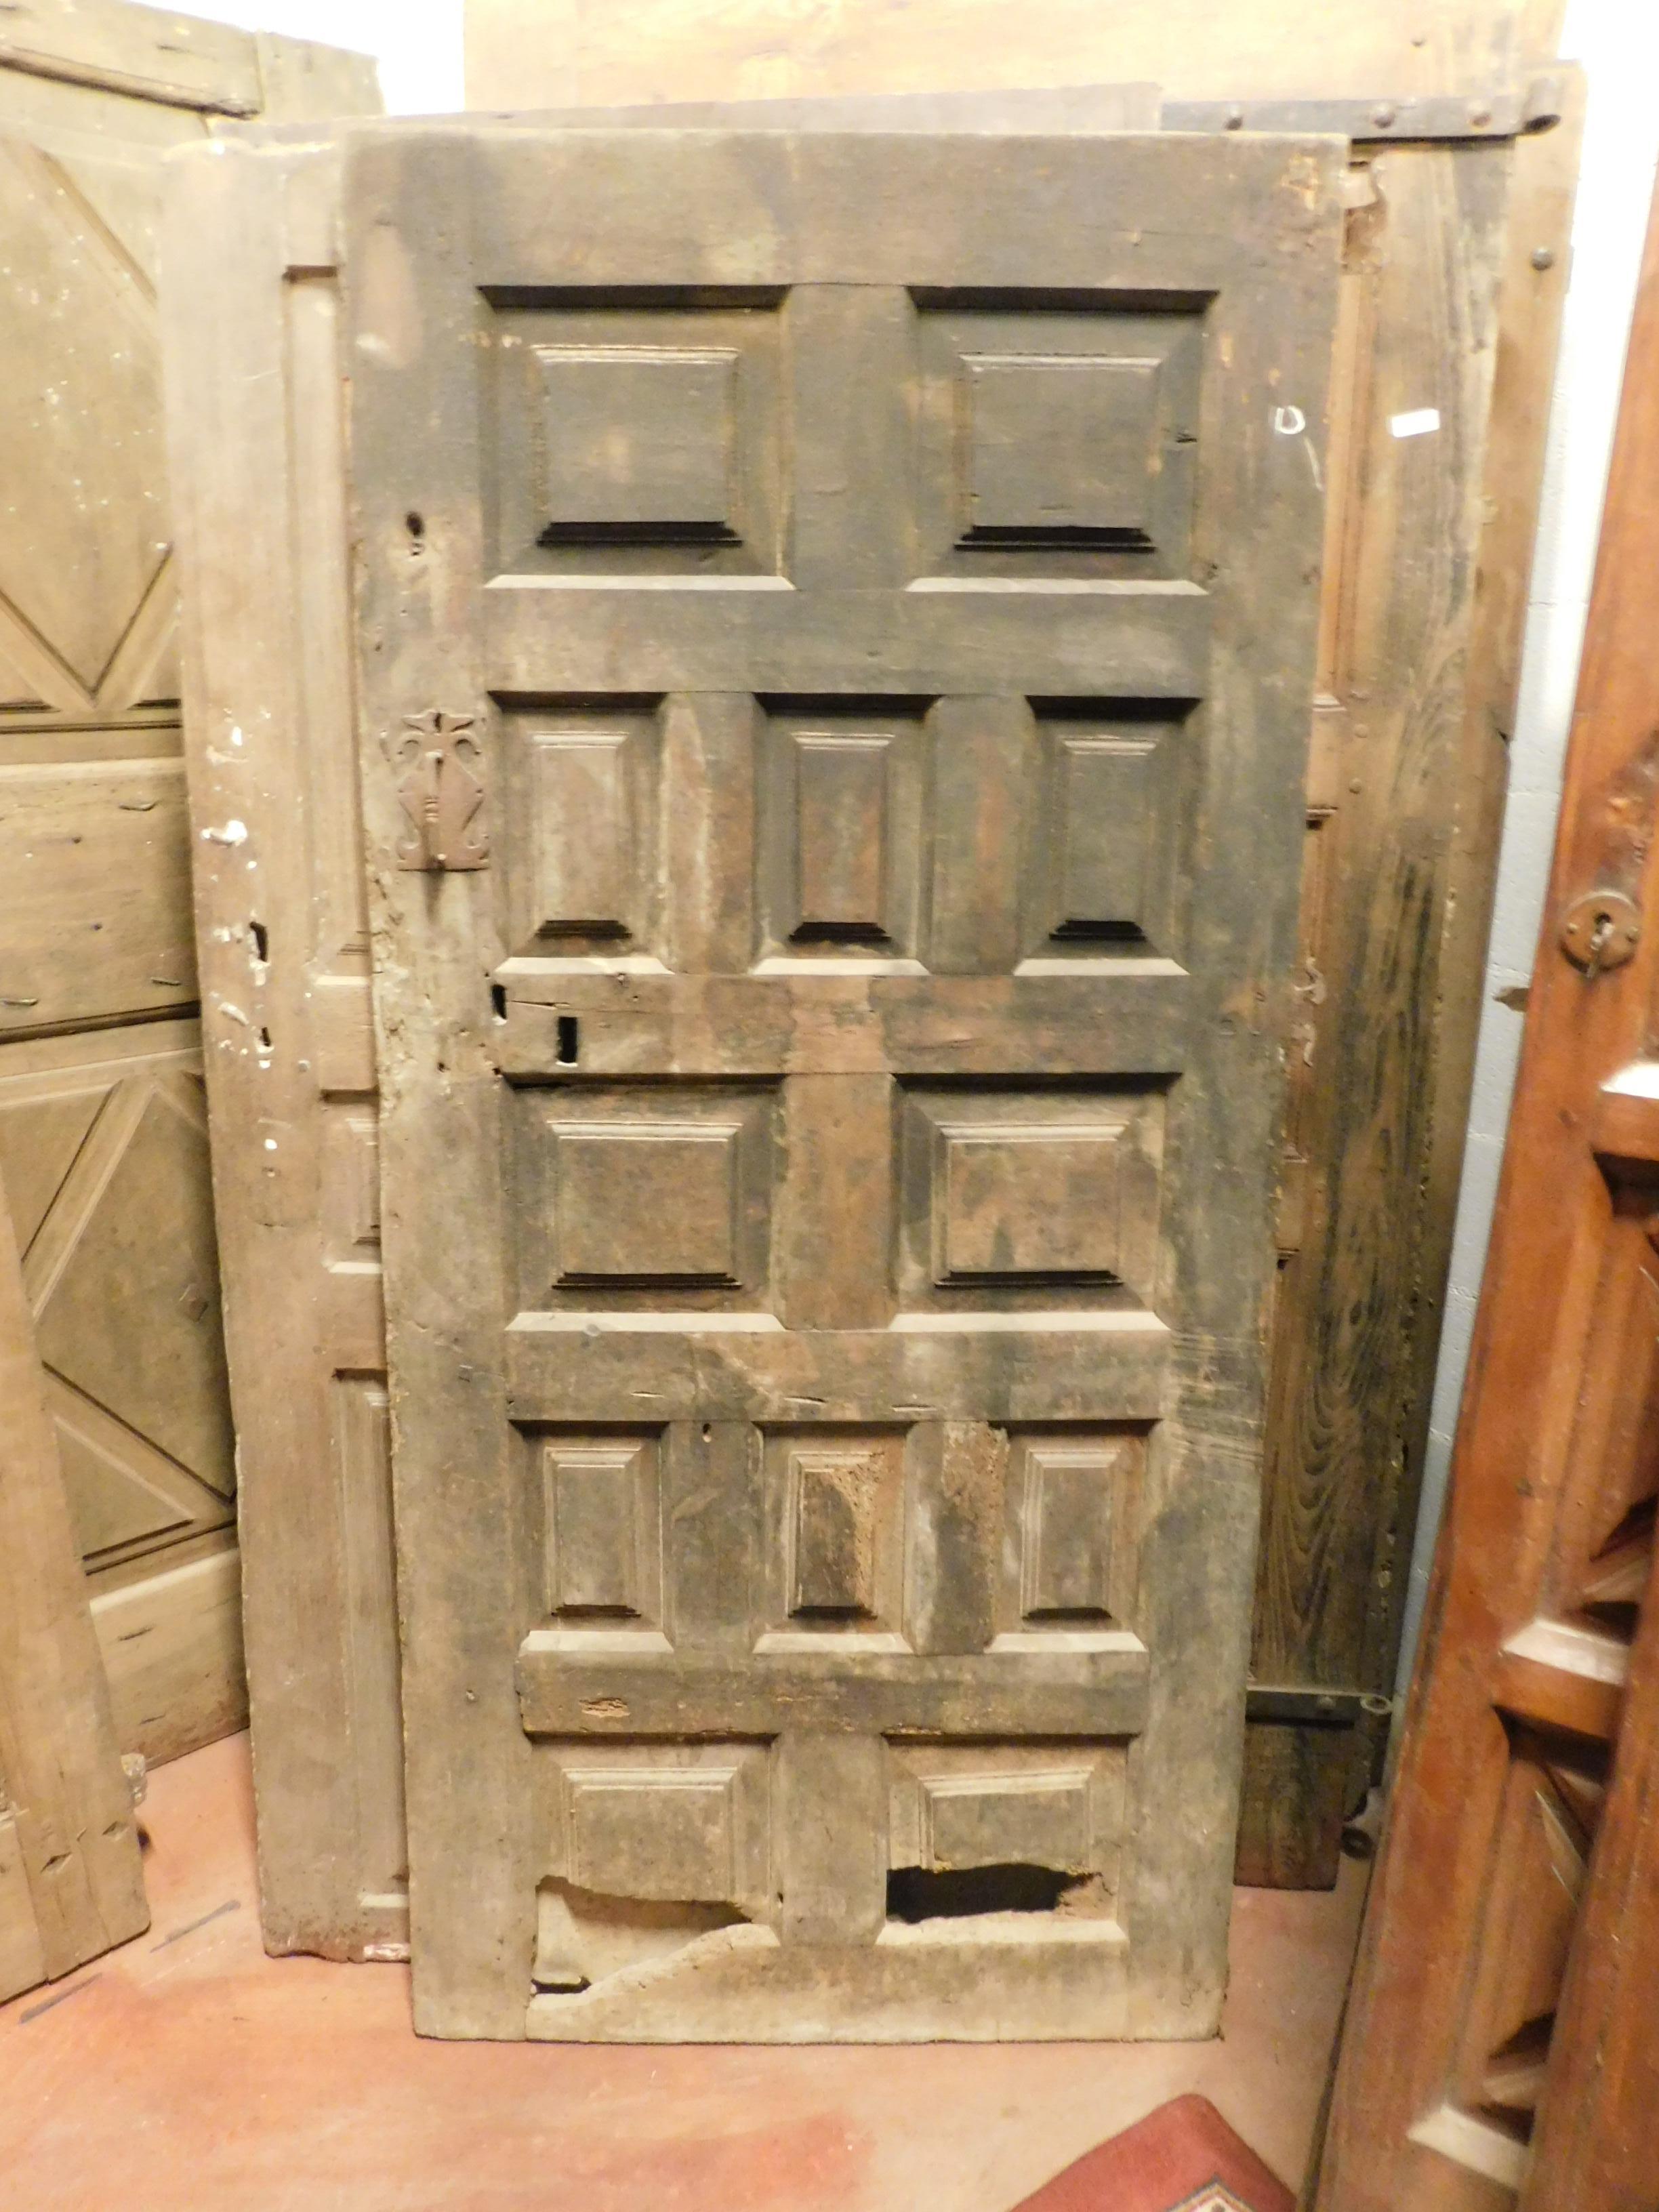 Ancienne porte rustique à panneaux, à restaurer car elle était très ancienne, se trouvait dans une habitation rustique en Espagne, au 17ème siècle.
Bois excellent, parfait dans les environnements rustiques mais modernes, comme les caves à vin ou